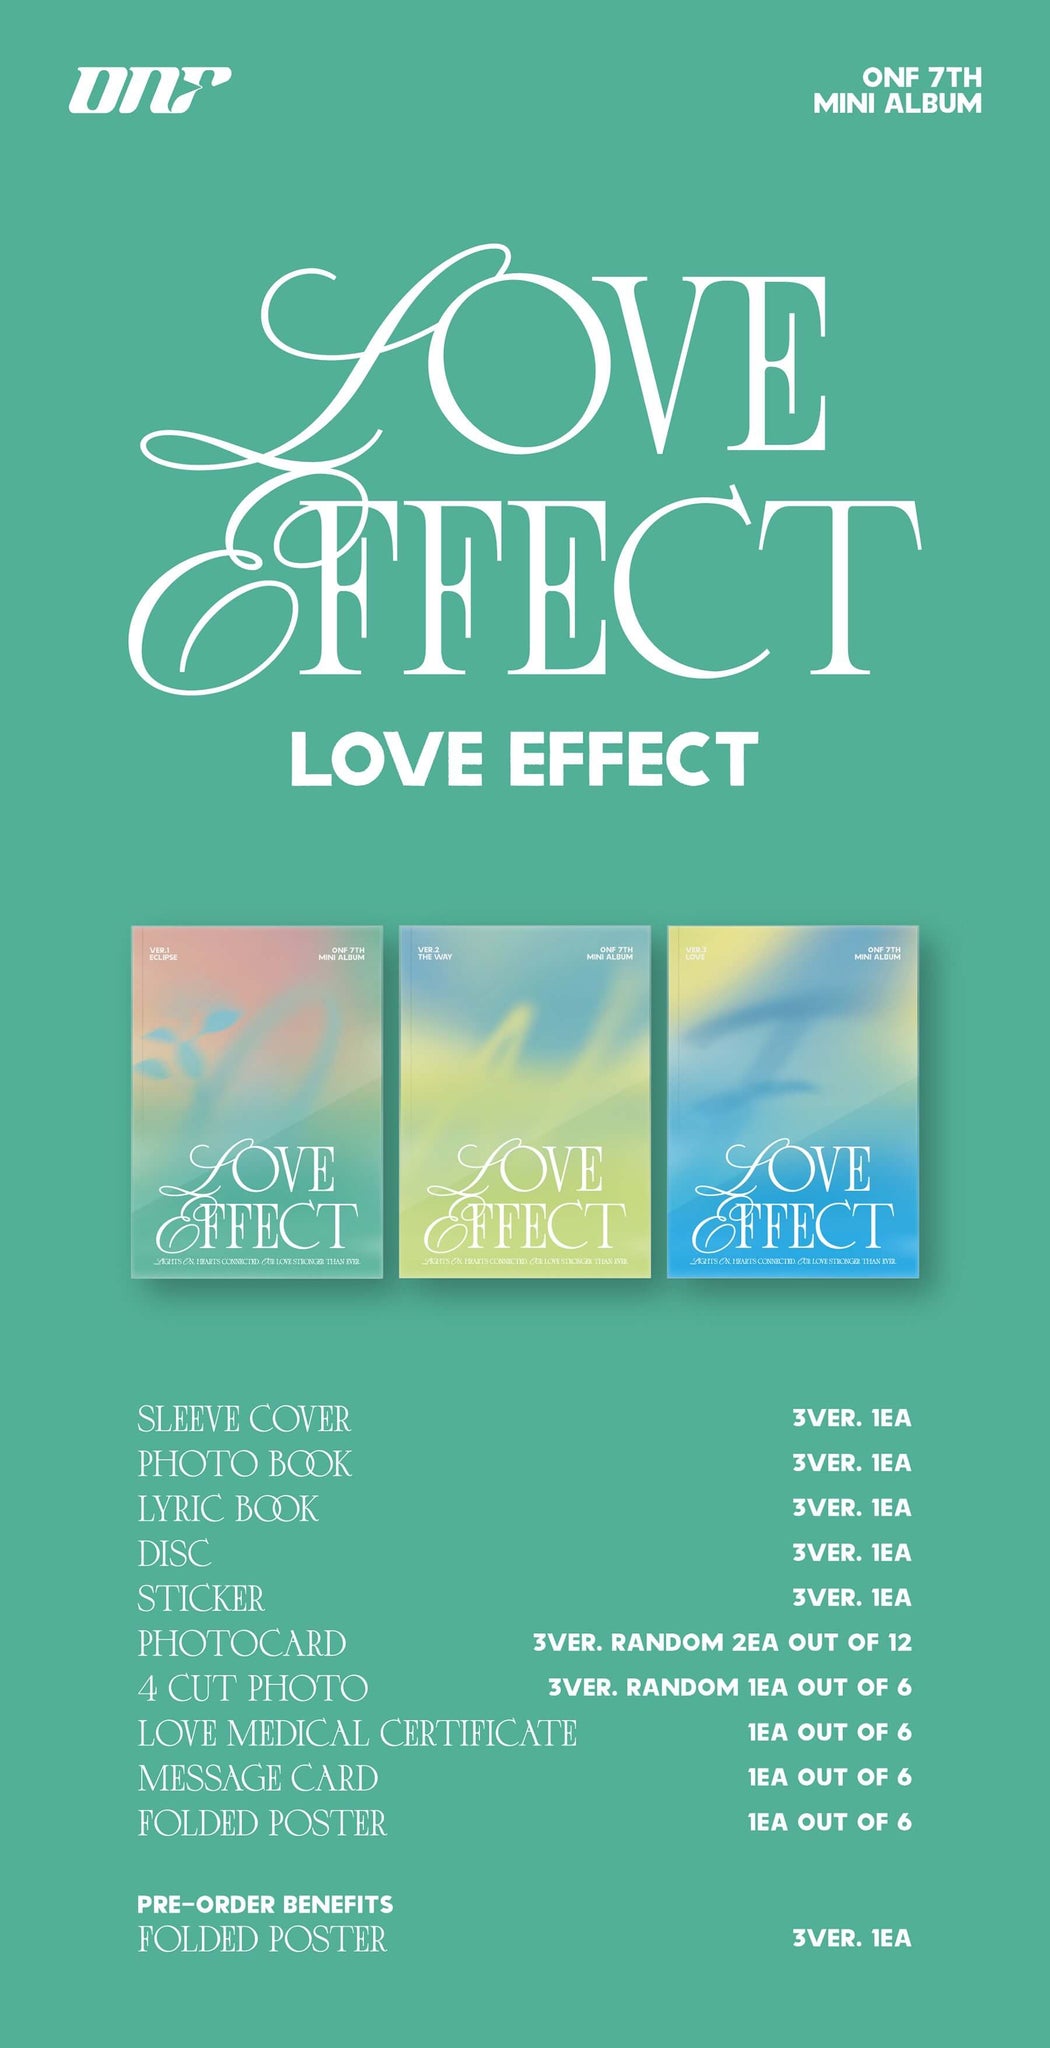 ONF 7th Mini Album LOVE EFFECT Album Preview